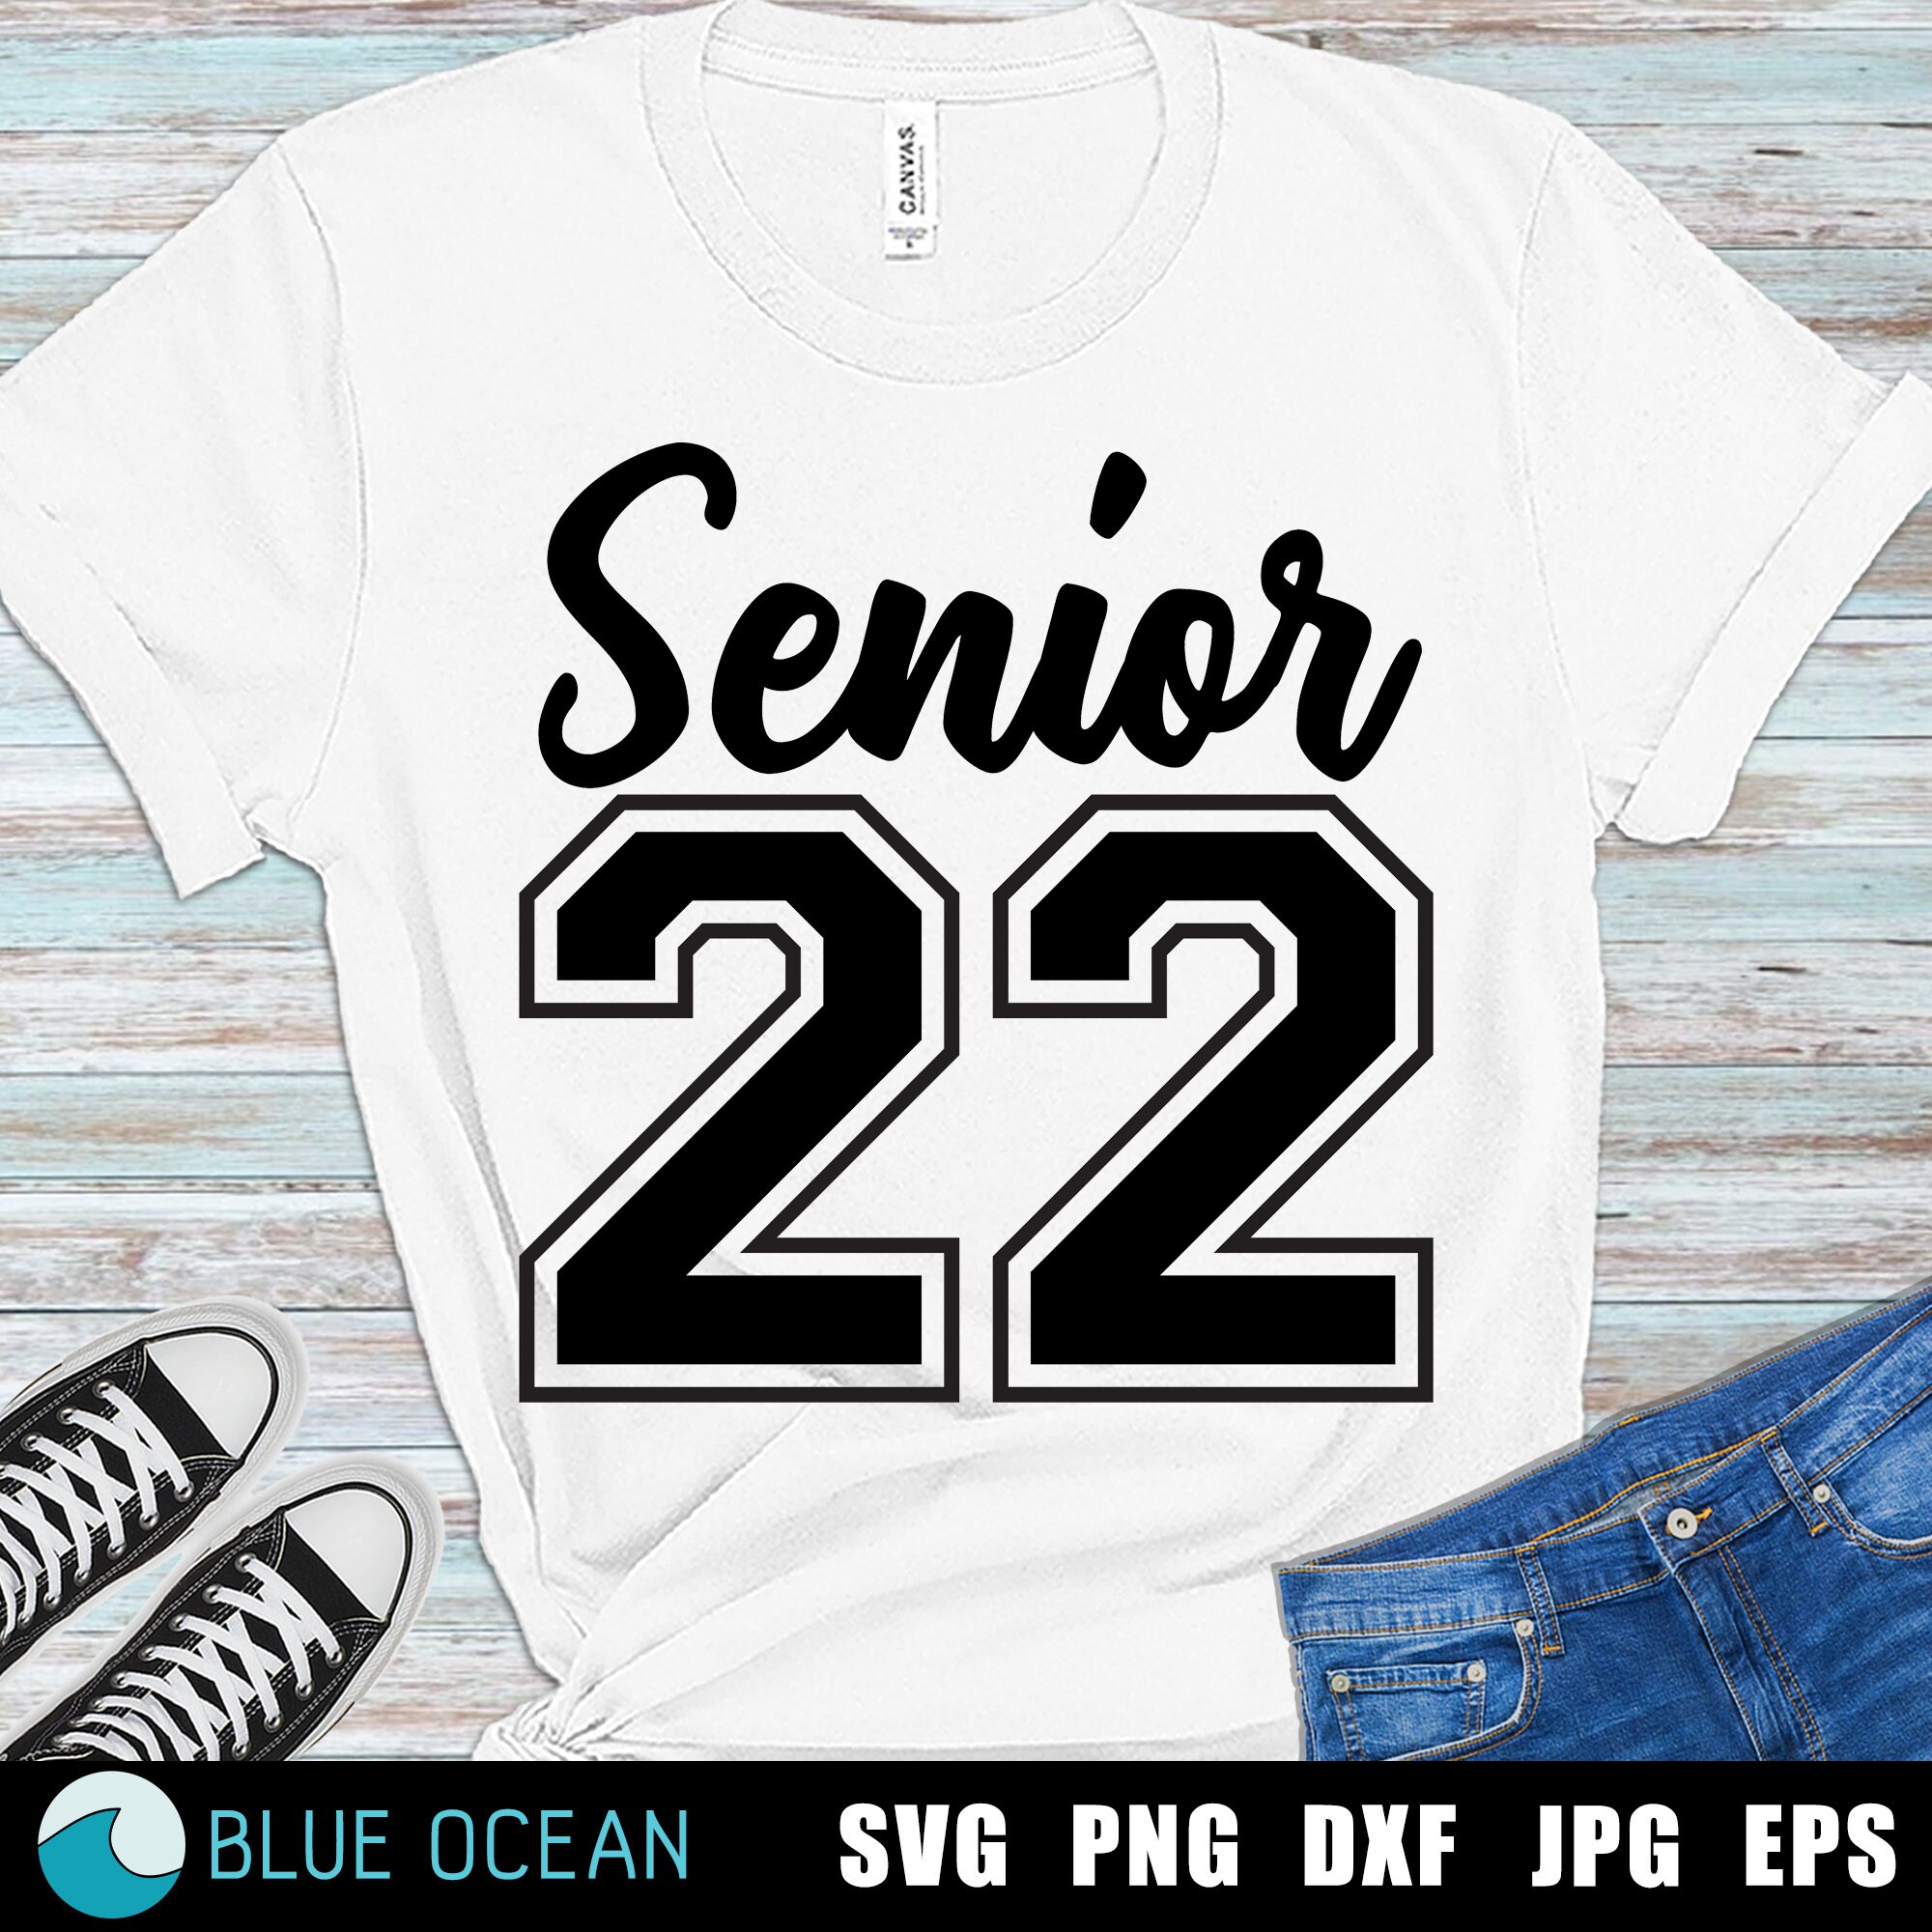 Senior 2022 SVG Class of 2022 SVG Senior 2022 shirt Senior | Etsy